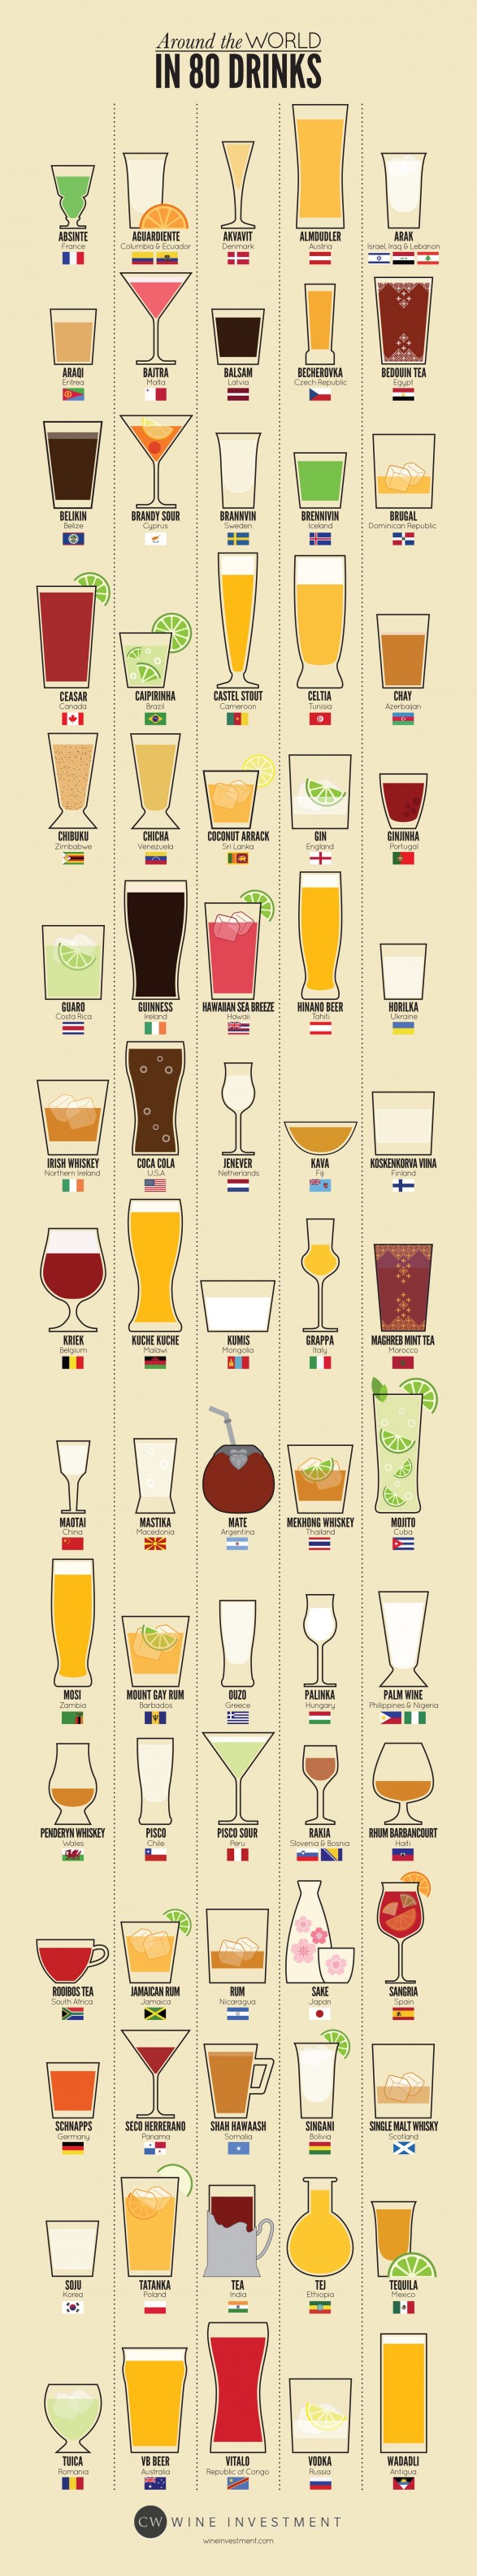 Cocktail più famosi al mondo, infografica